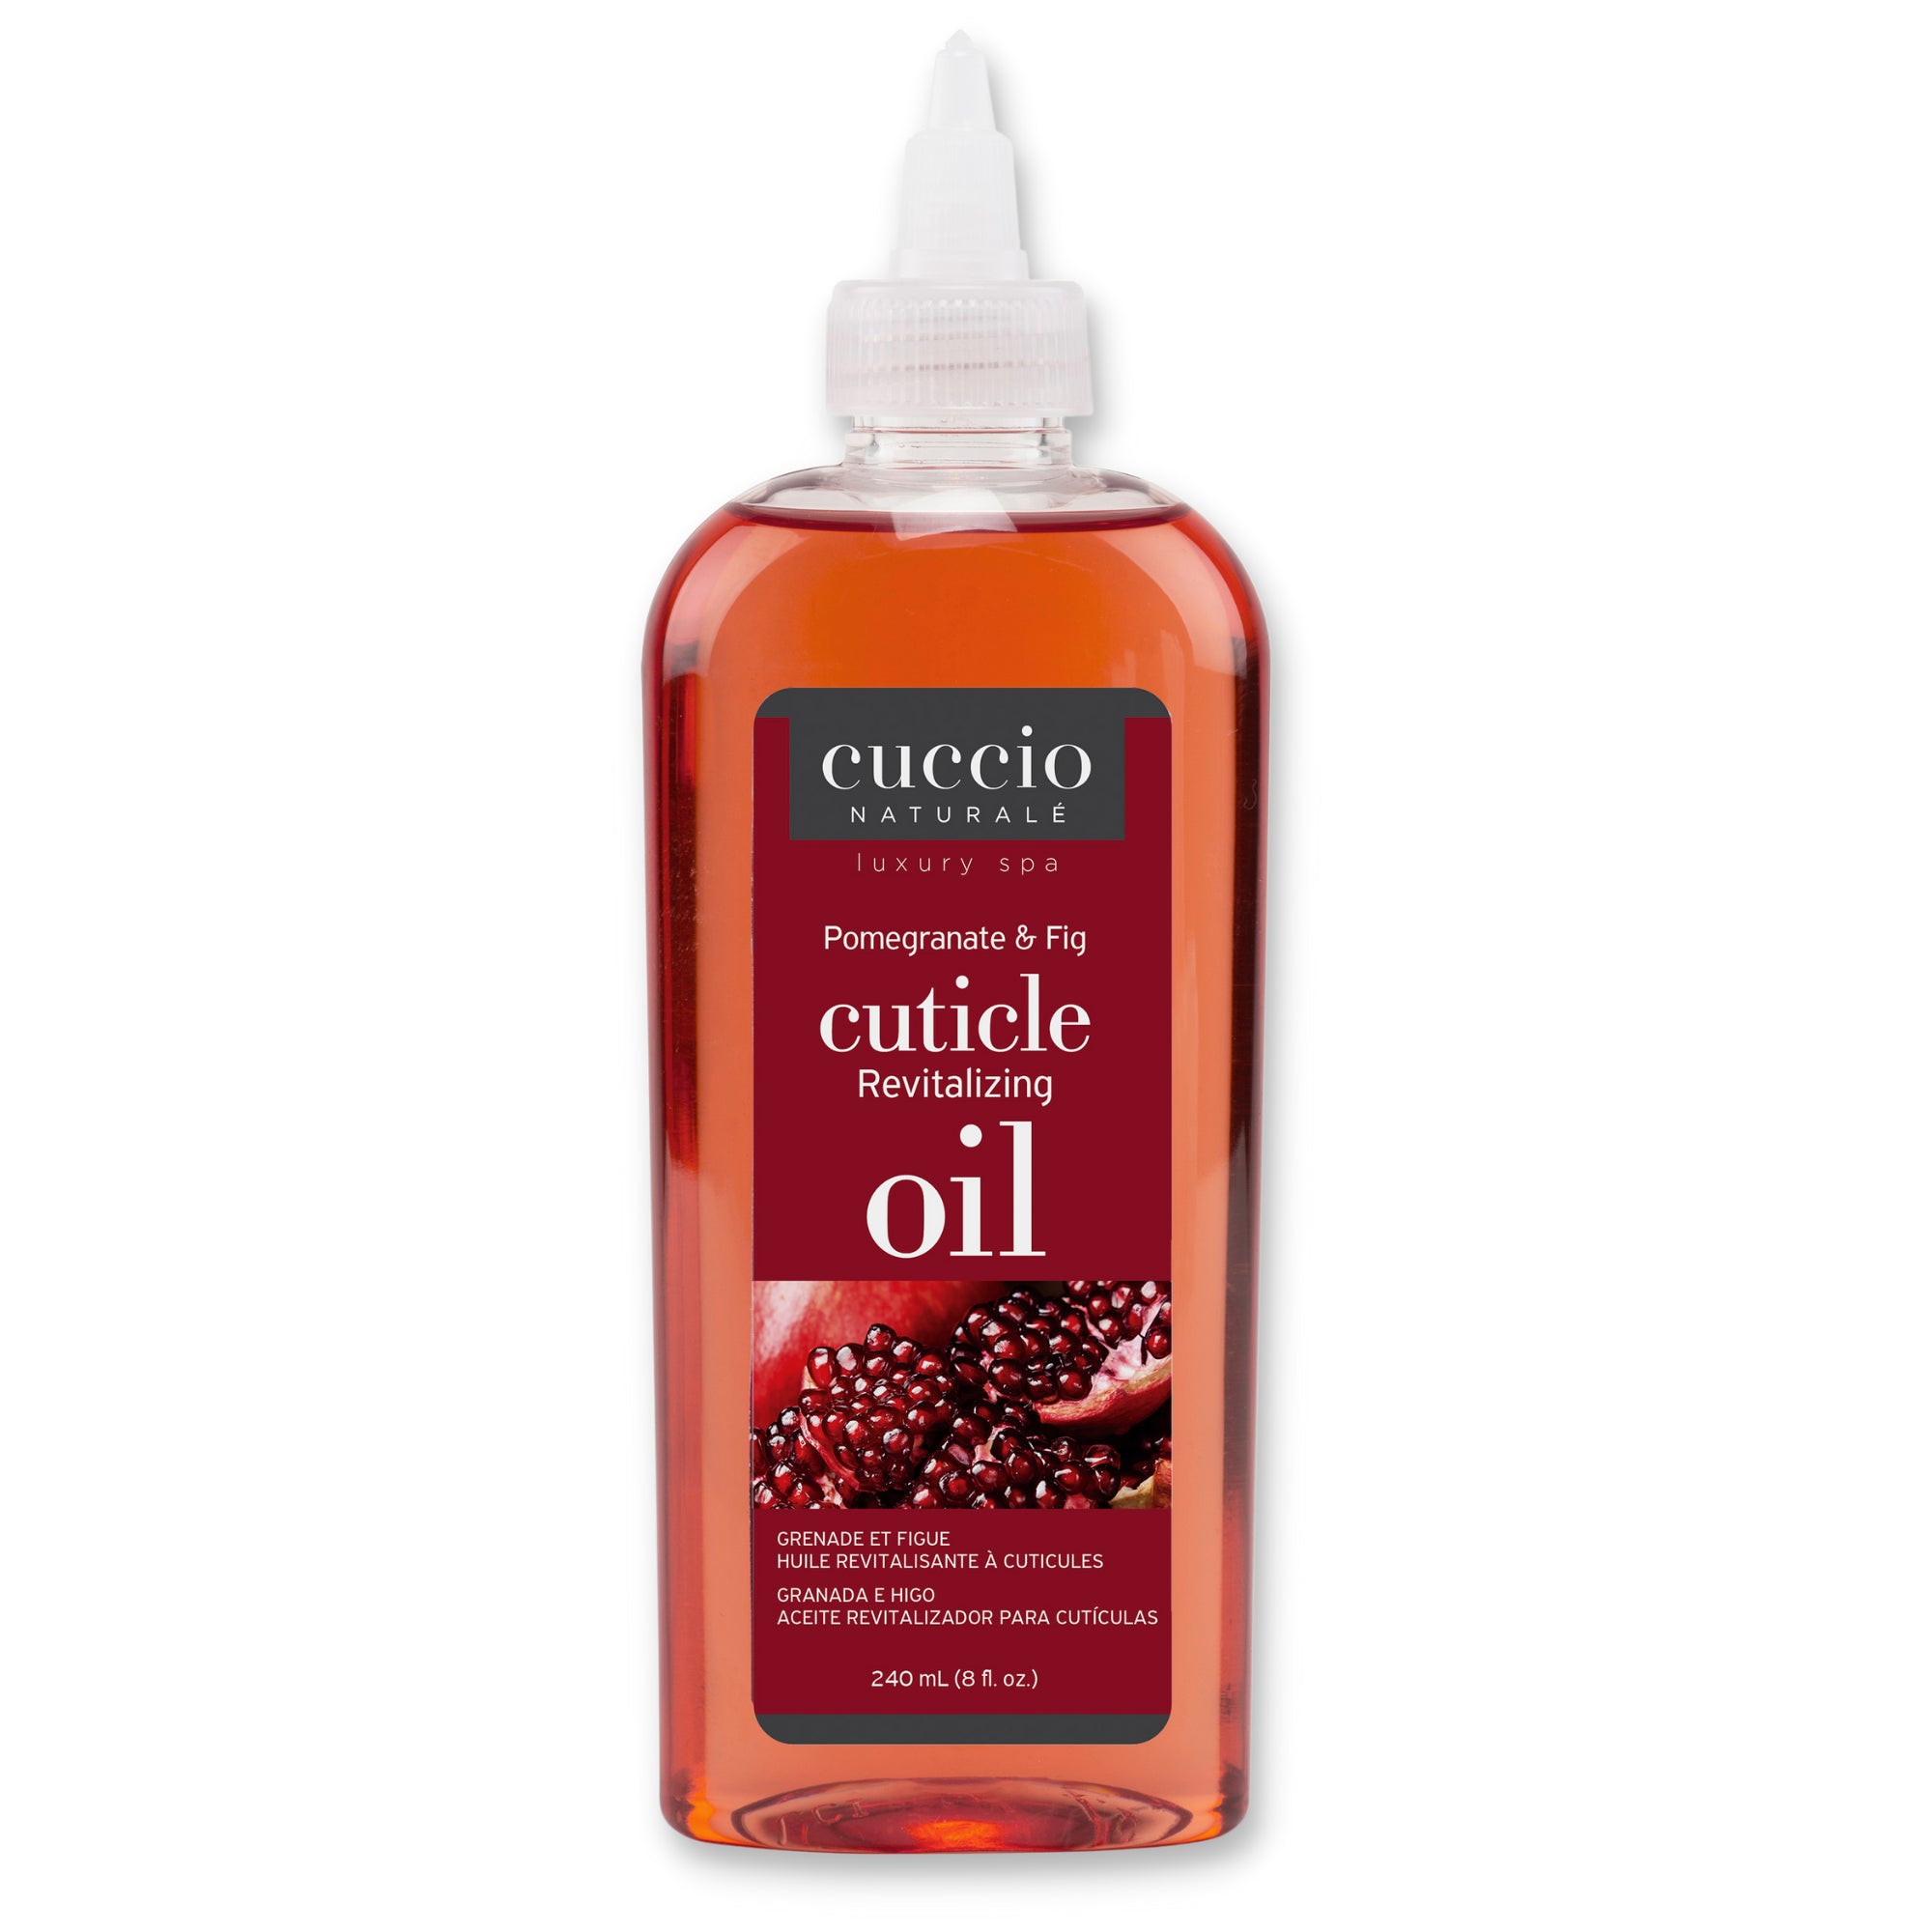 Cuccio Naturalé Cuticle Revitalizing Oil Refill - Pomegranate & Fig